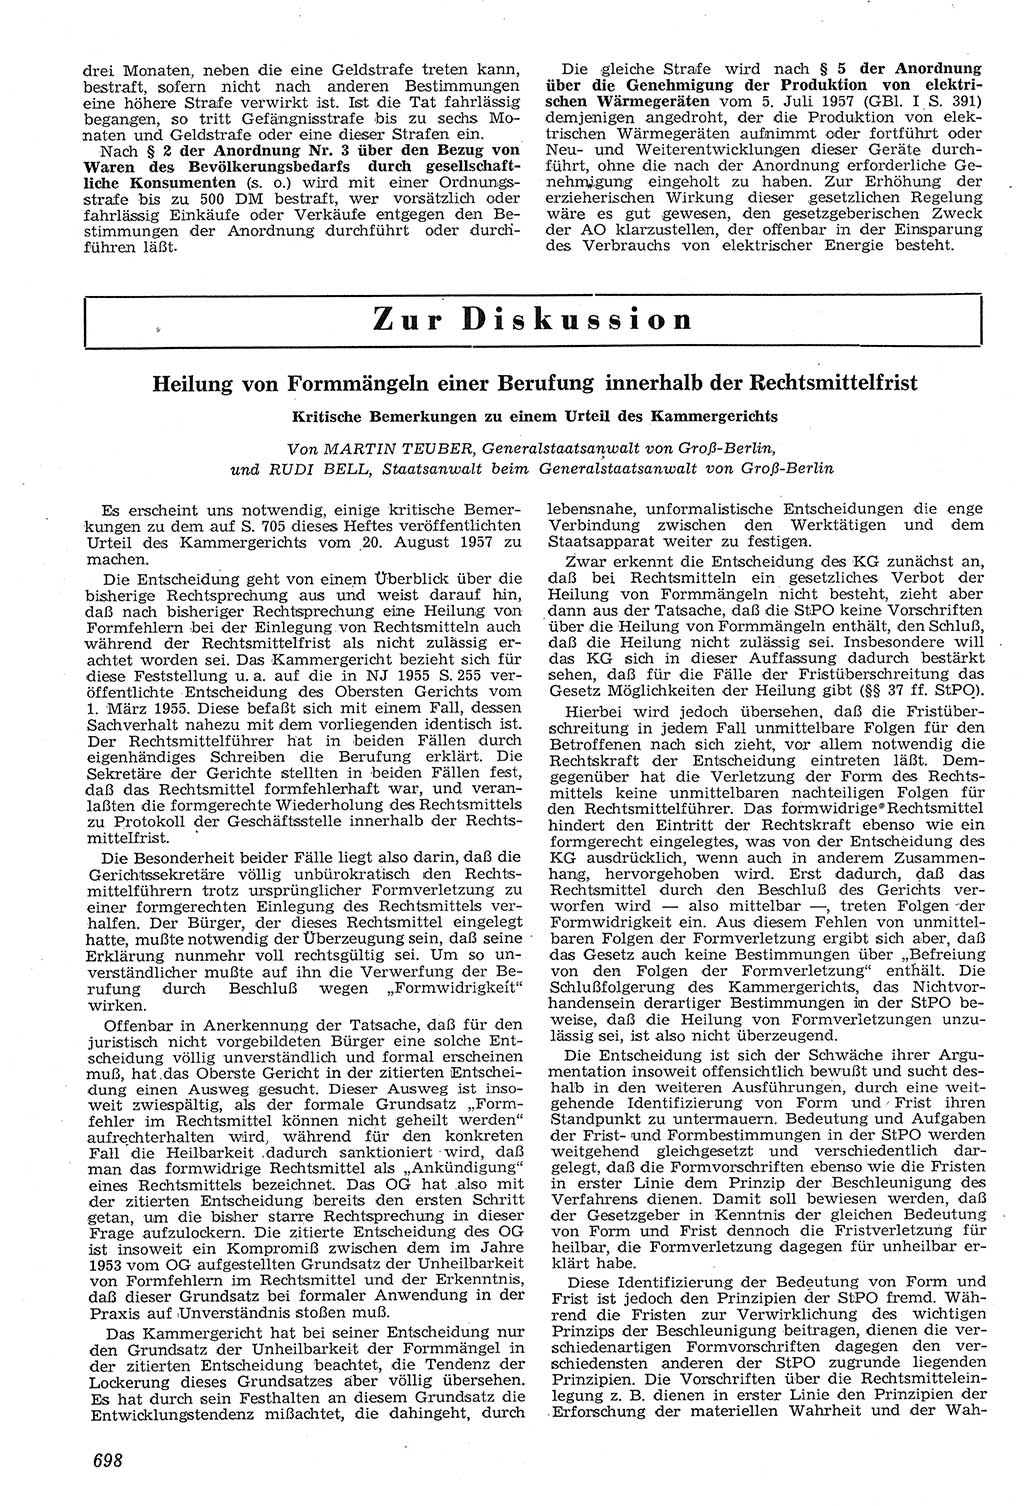 Neue Justiz (NJ), Zeitschrift für Recht und Rechtswissenschaft [Deutsche Demokratische Republik (DDR)], 11. Jahrgang 1957, Seite 698 (NJ DDR 1957, S. 698)